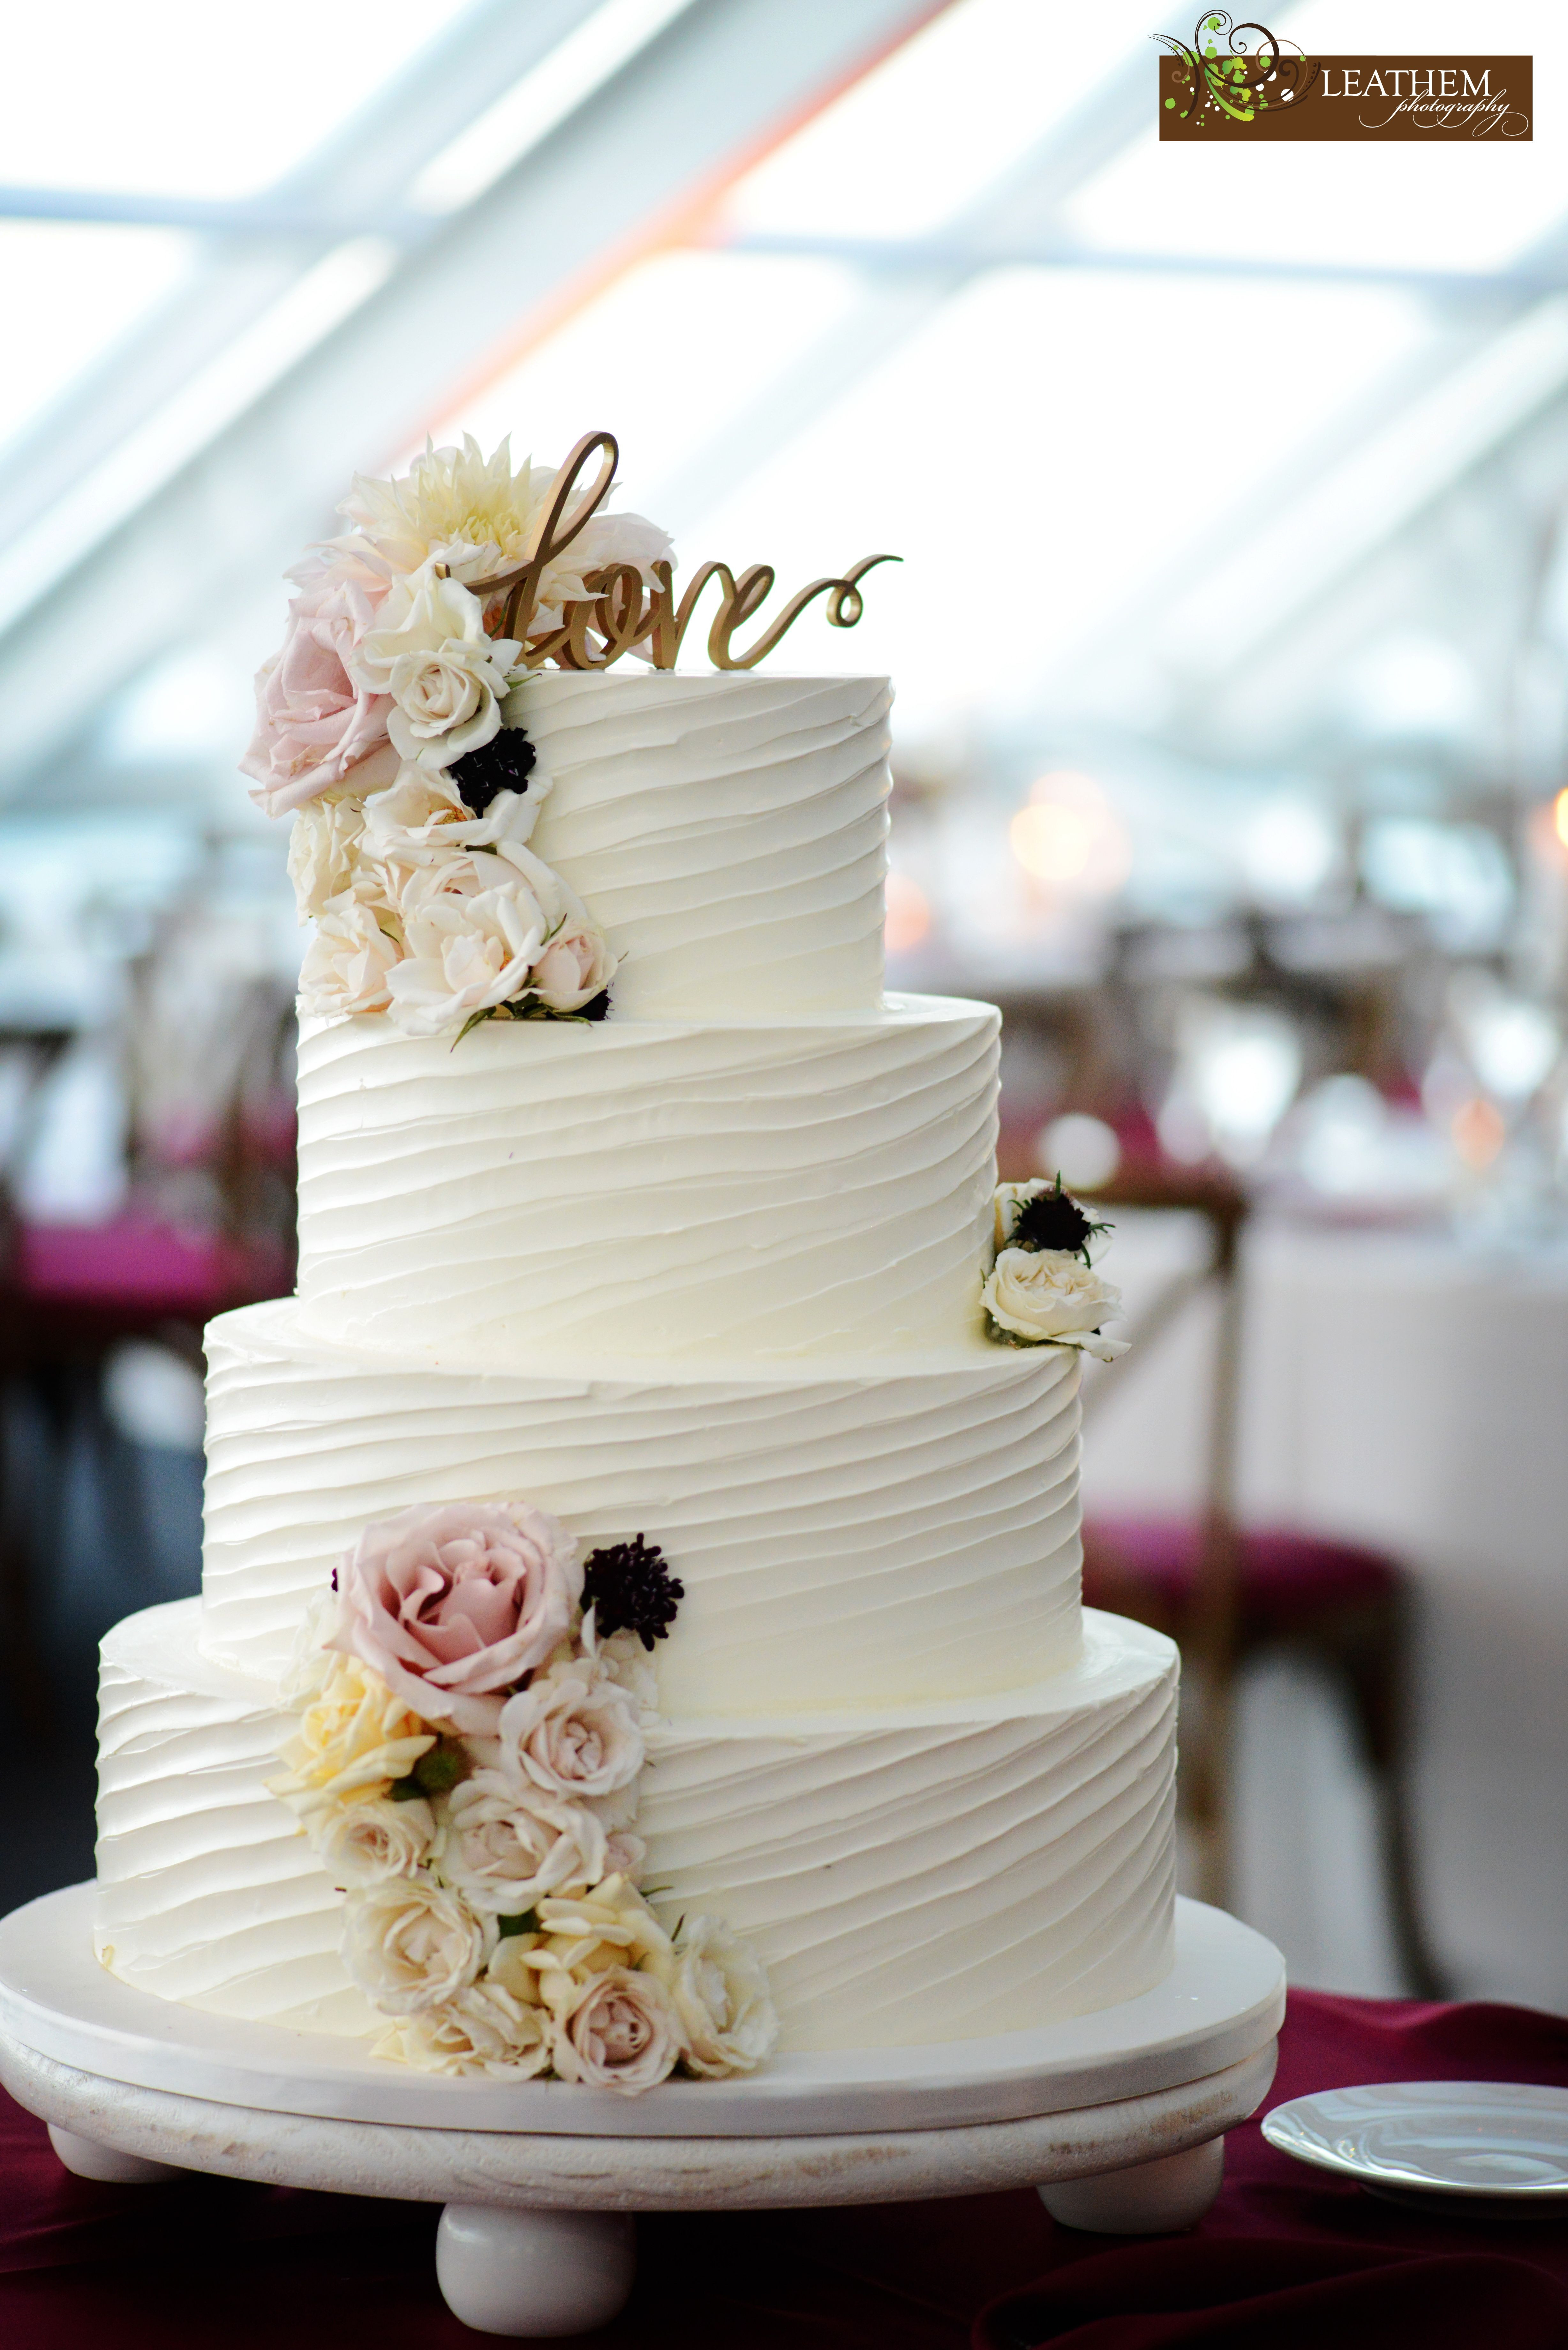 Textured Buttercream Wedding Cakes
 Gorgeous textured buttercream wedding cake adorned with